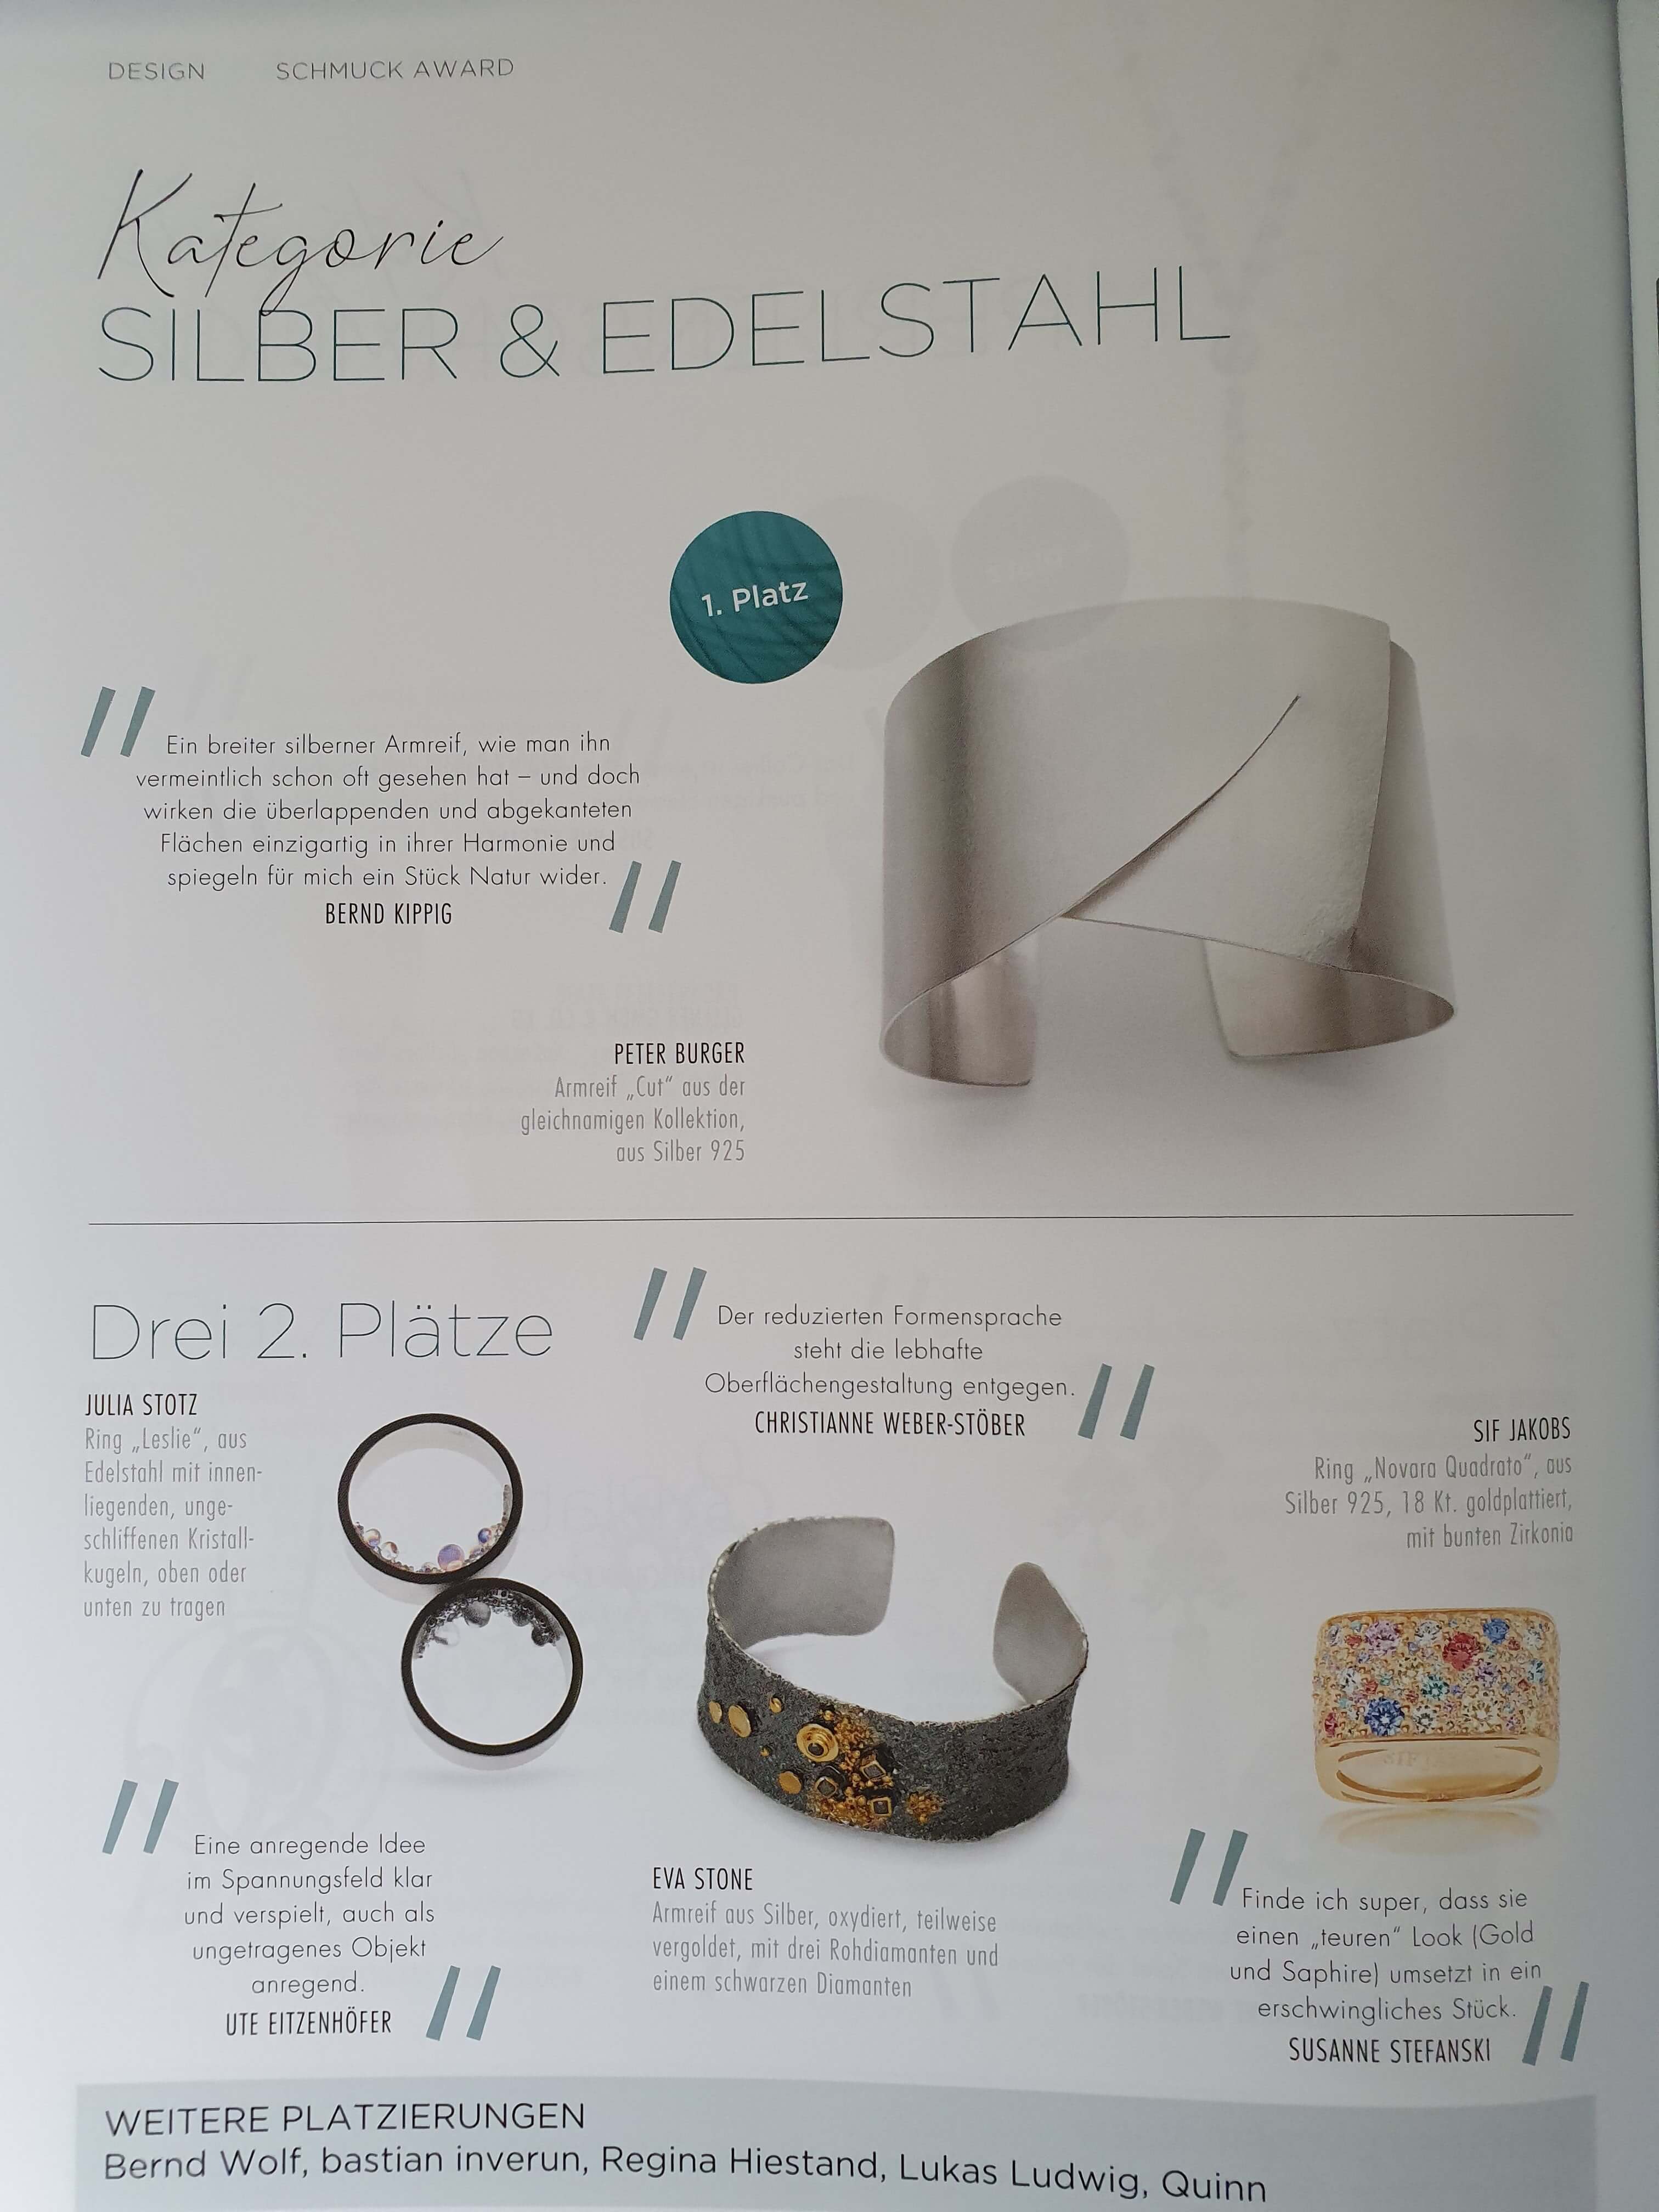 EvaStone nagrodzona w niemieckim magazynie o biżuterii SCHMUCK